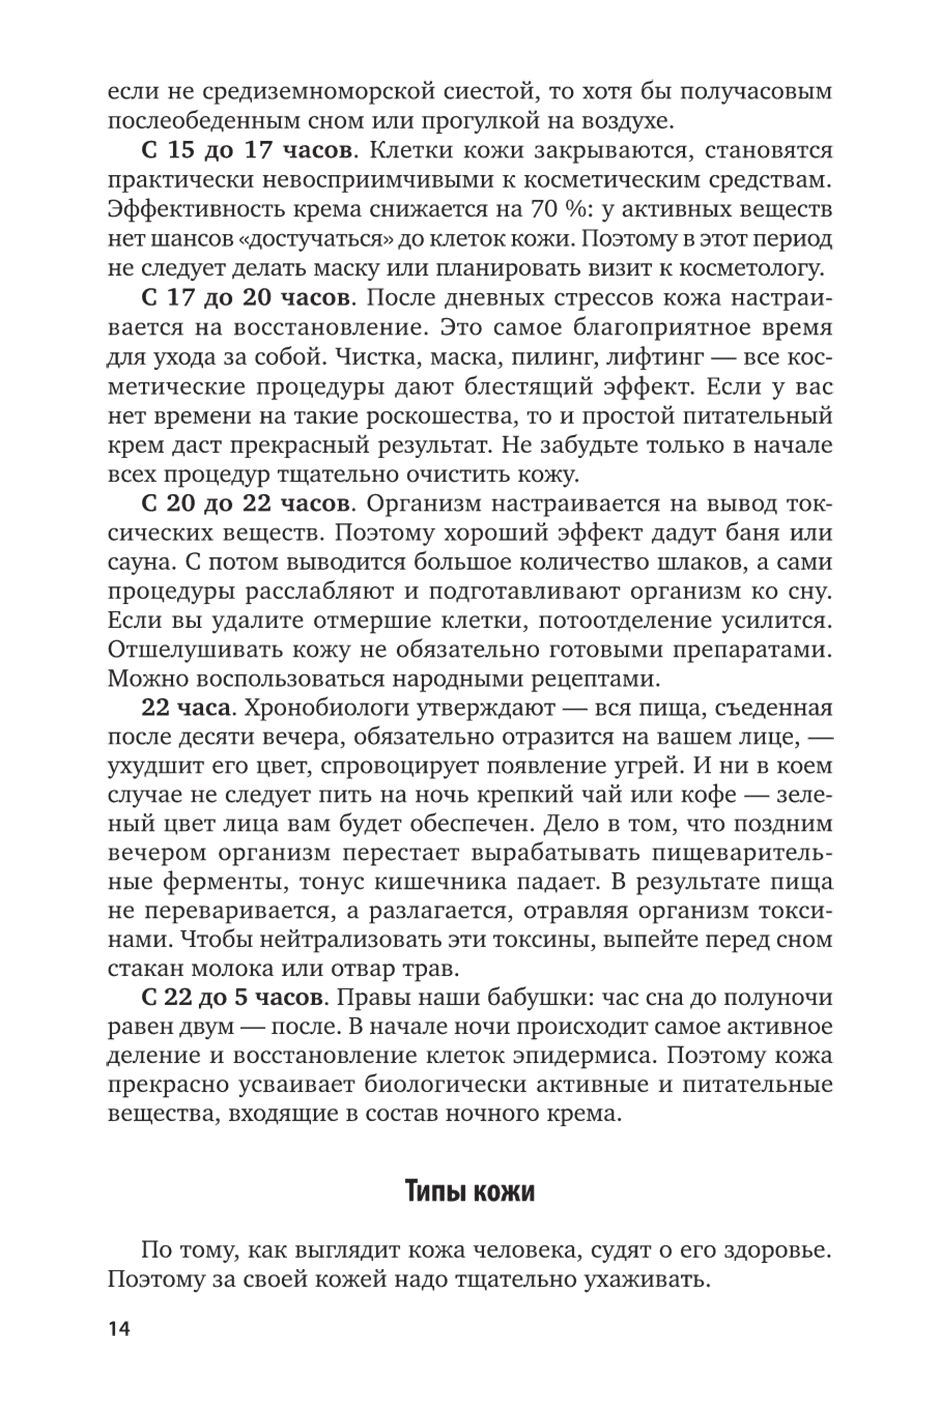 Пример страницы из книги "Основы косметологии. Макияж" - Остроумова Е. Б.